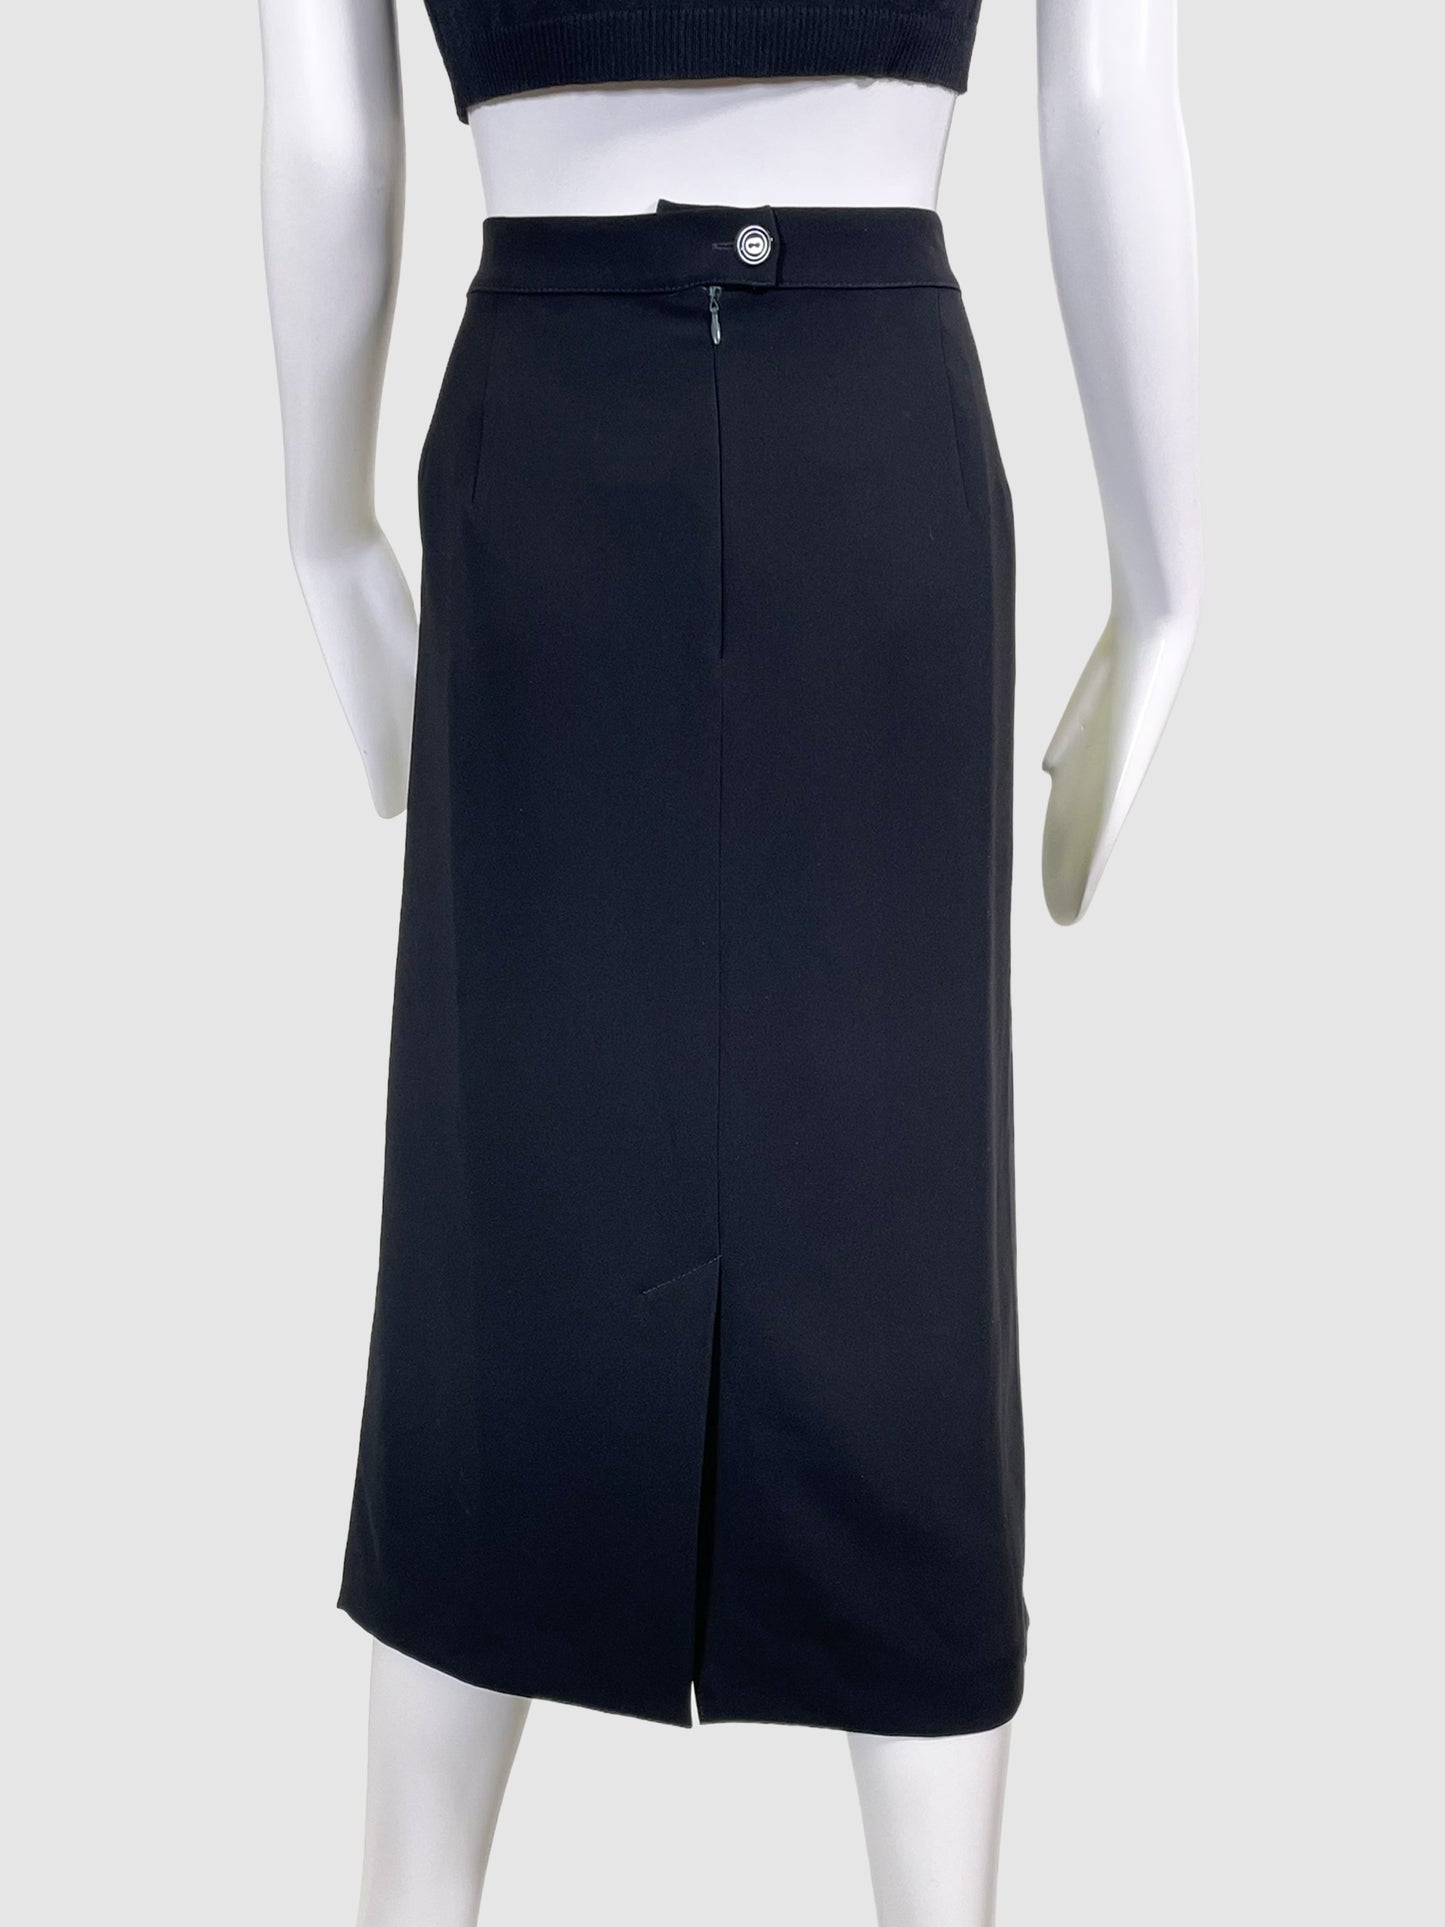 Marina Rinaldi Textured Midi Skirt - Size L